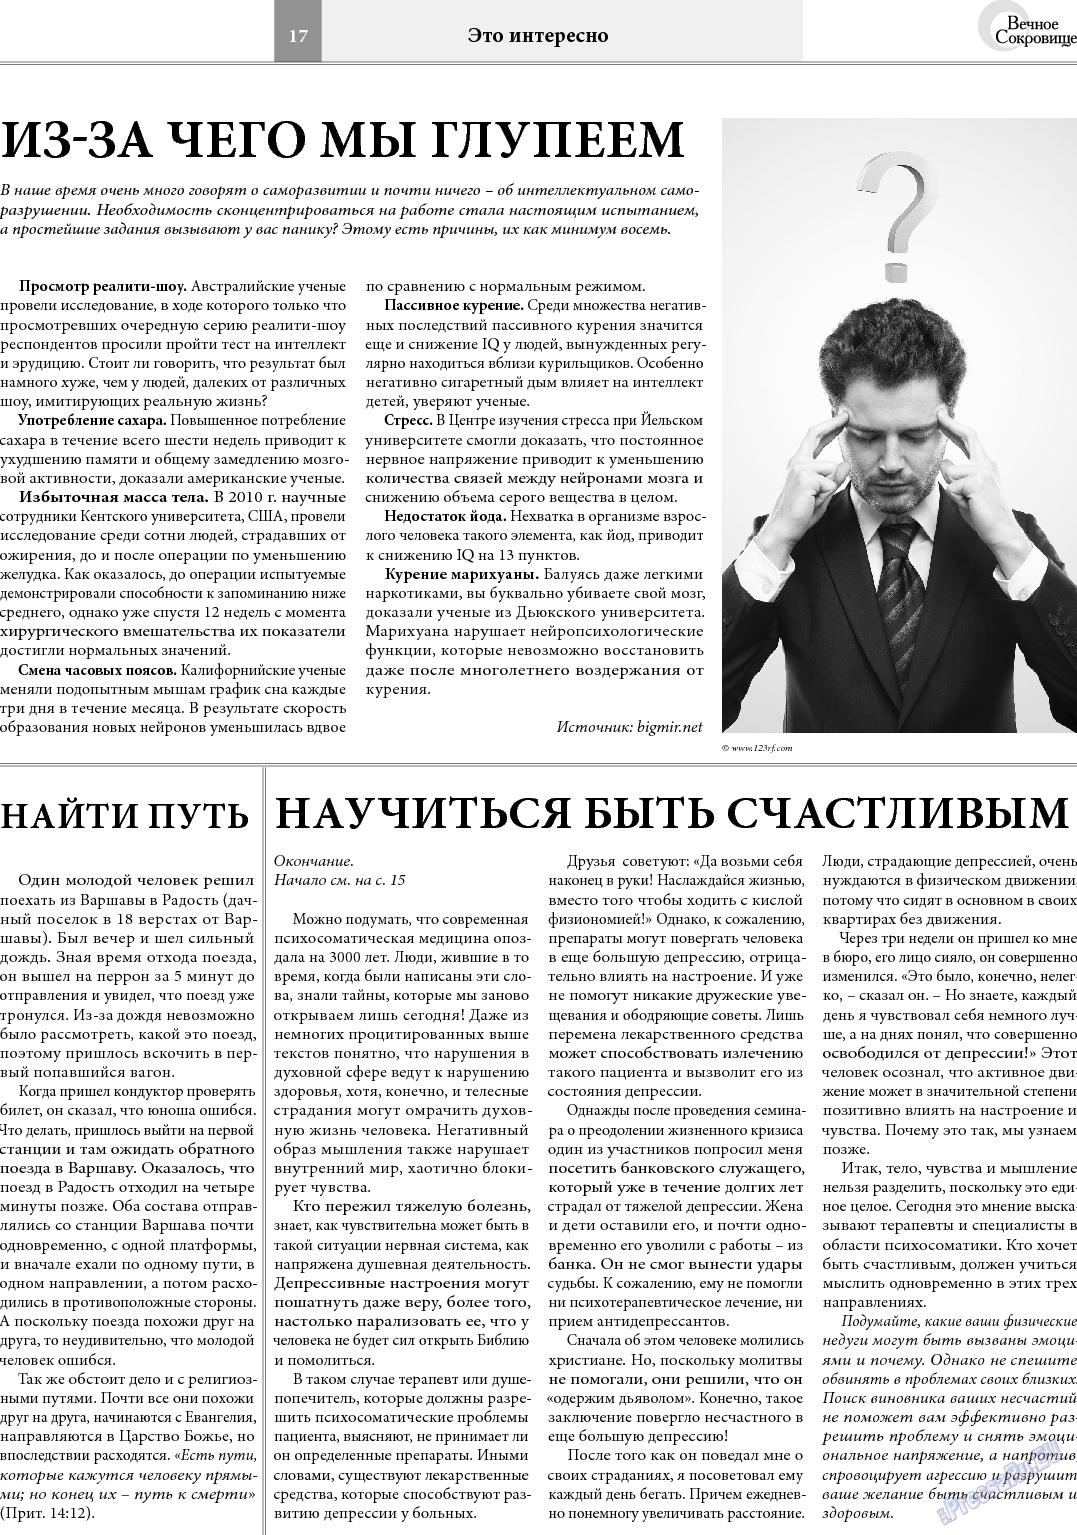 Вечное сокровище, газета. 2014 №1 стр.17